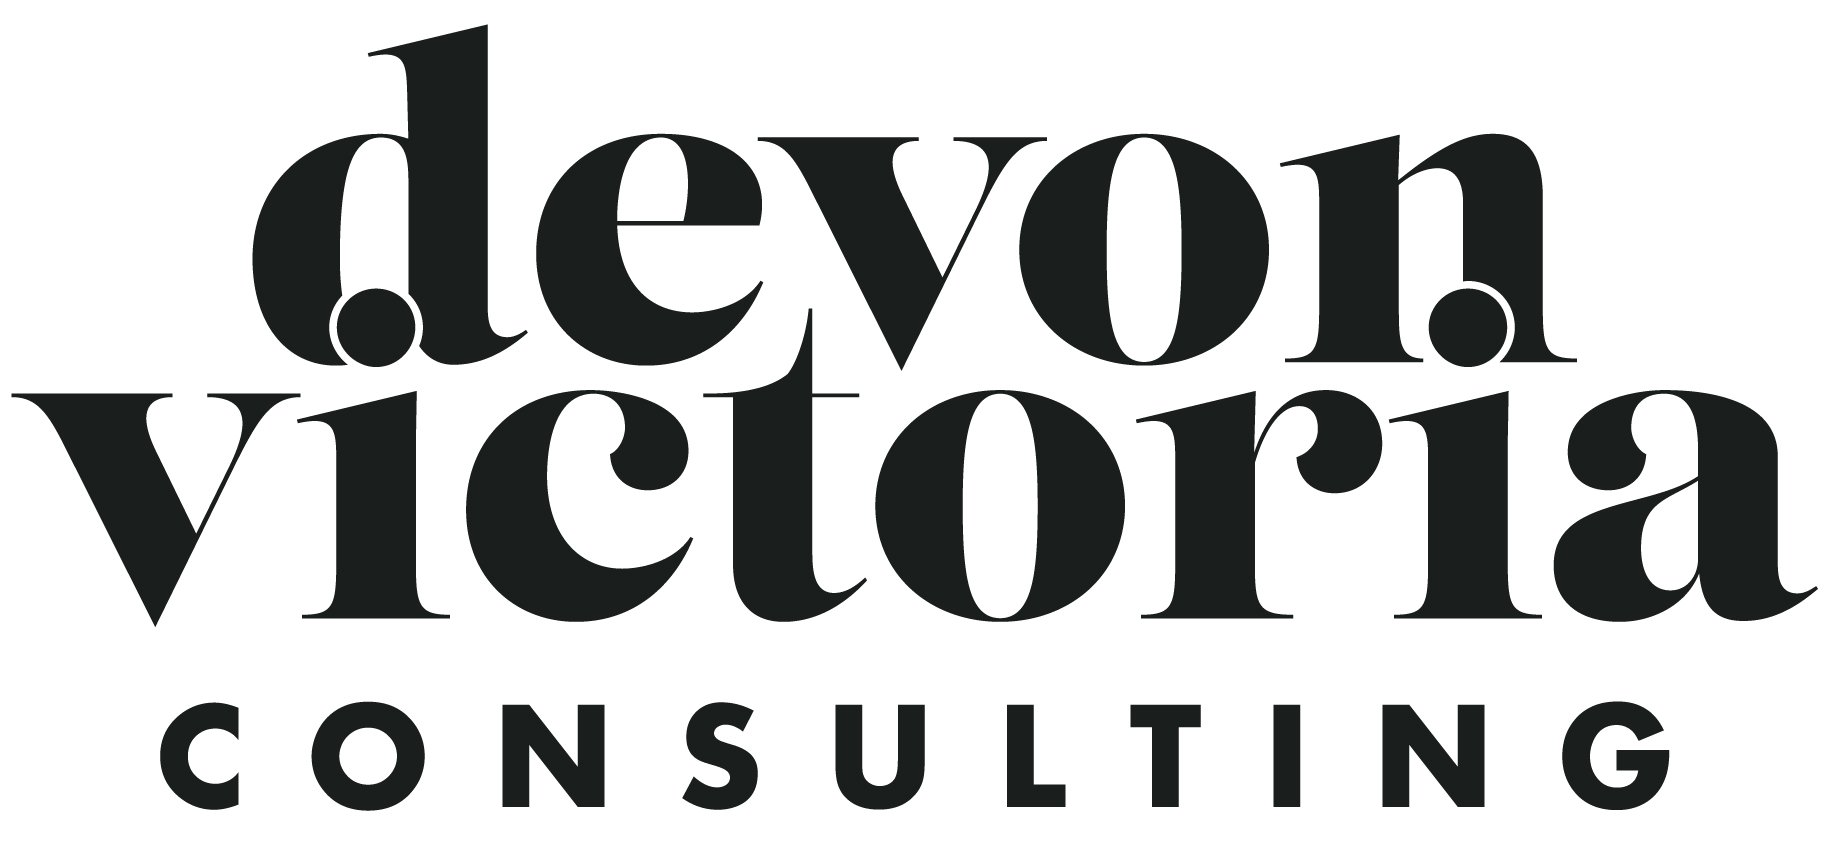 Devon Victoria Consulting